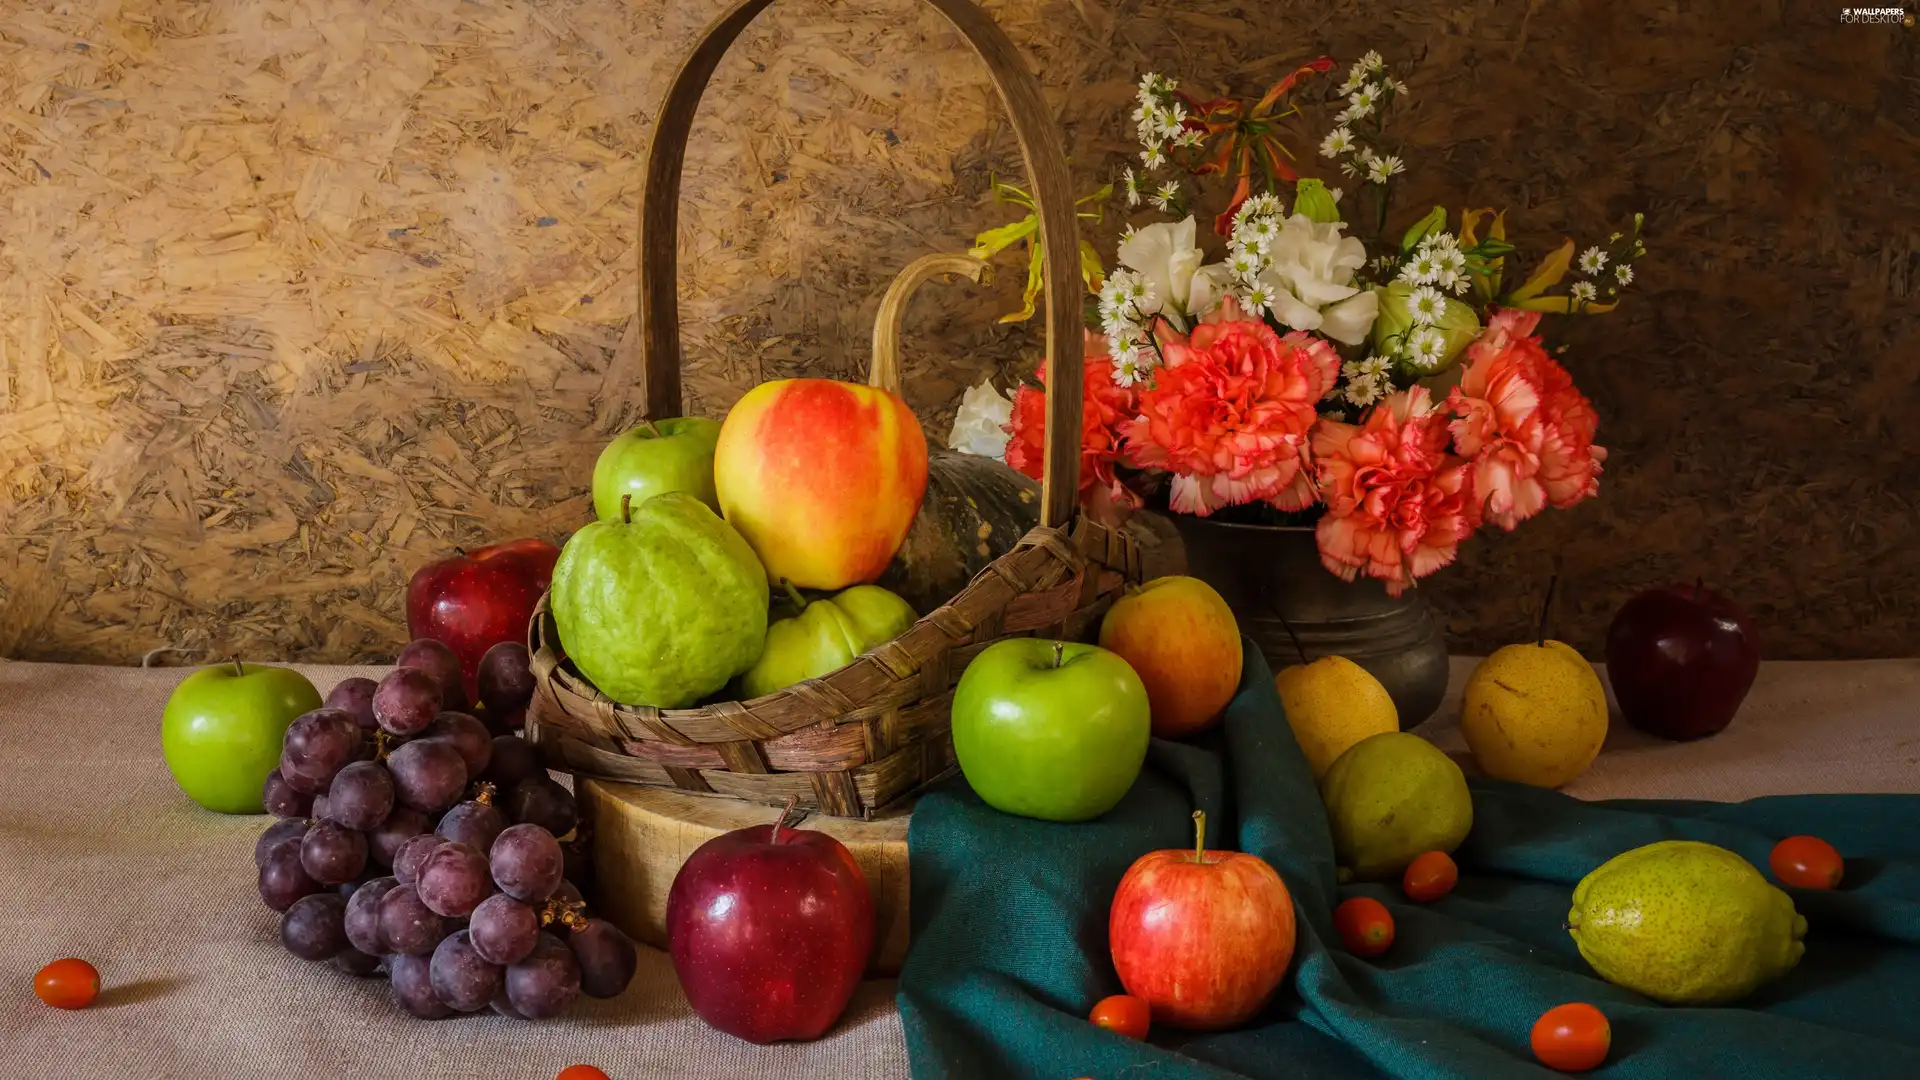 Grapes, apples, Bouquet of Flowers, truck concrete mixer, Fruits, basket, cloves